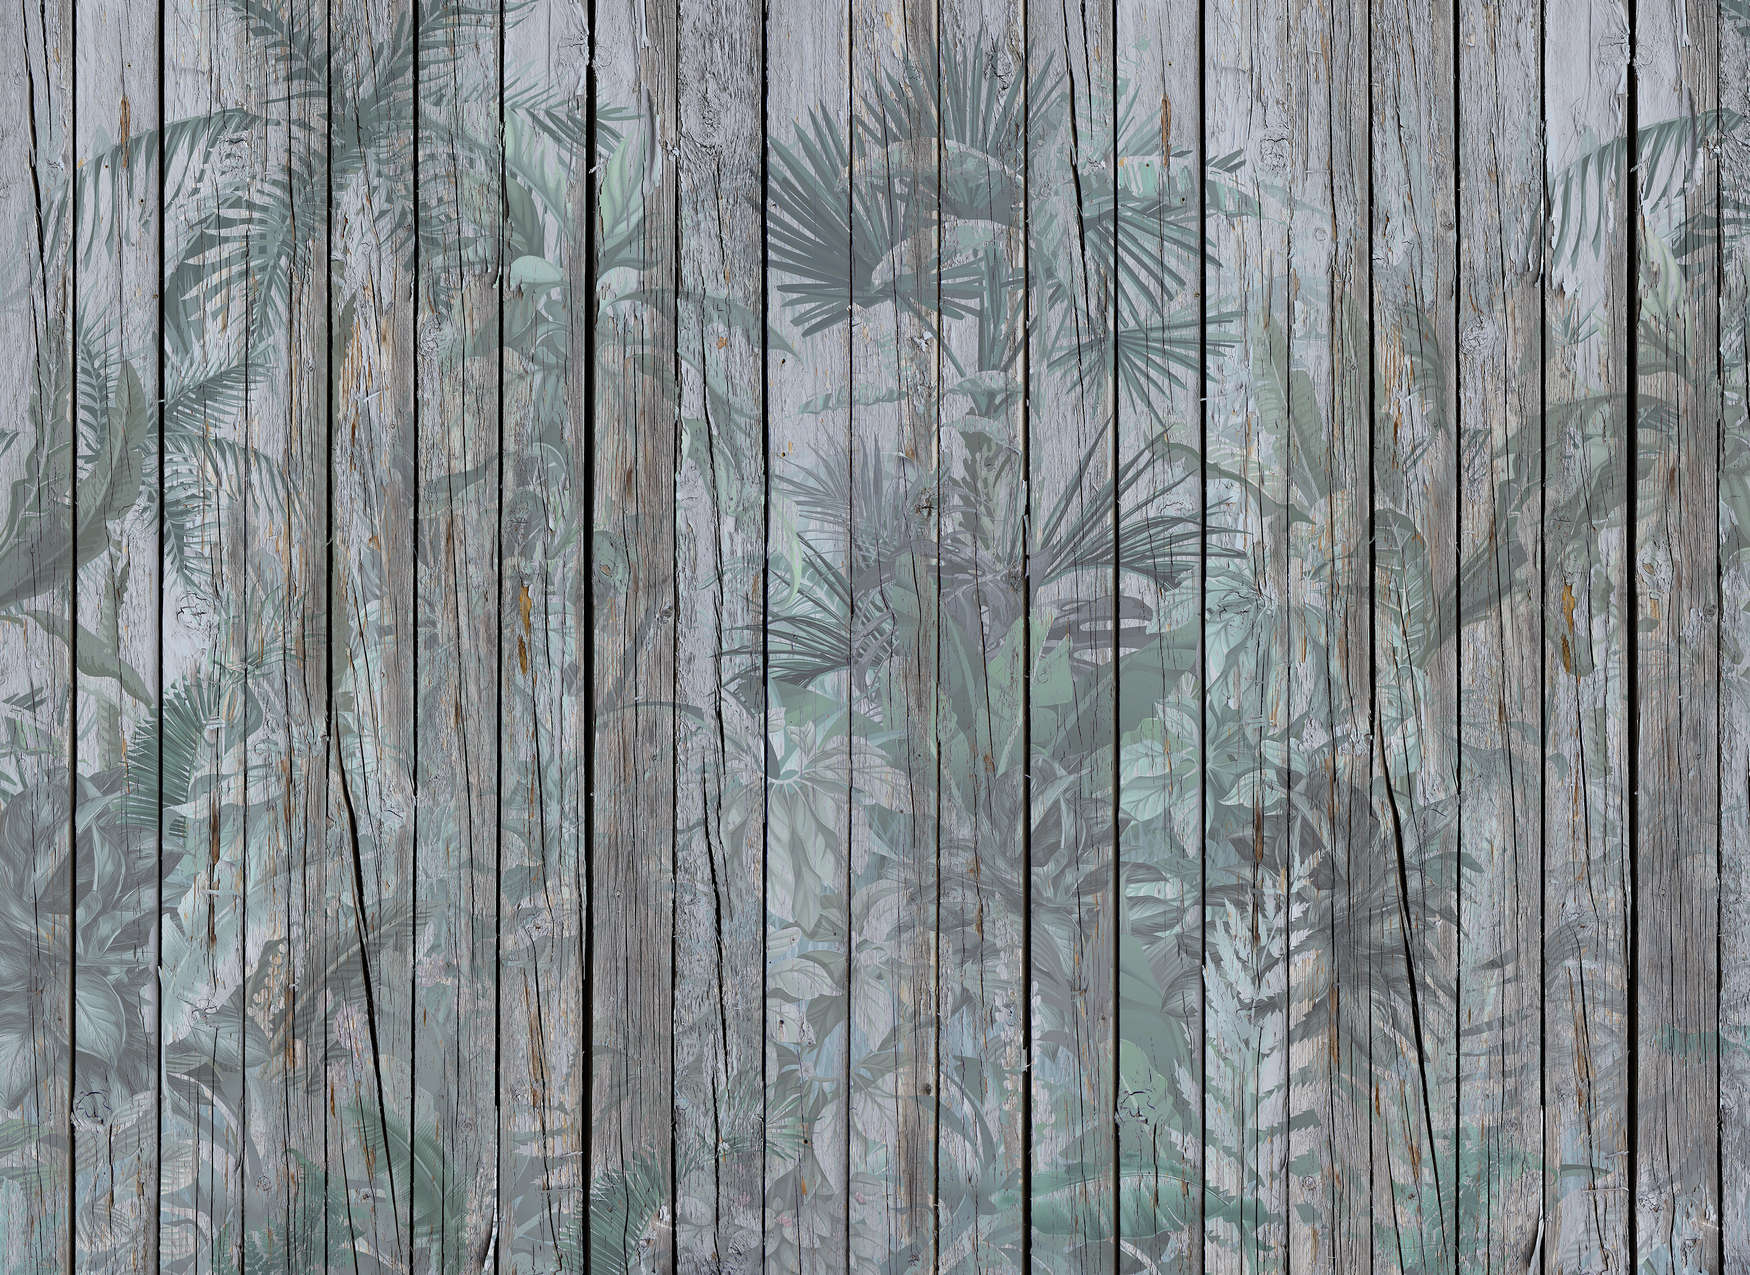             Papier peint mur en bois avec plantes de la jungle - marron, vert
        